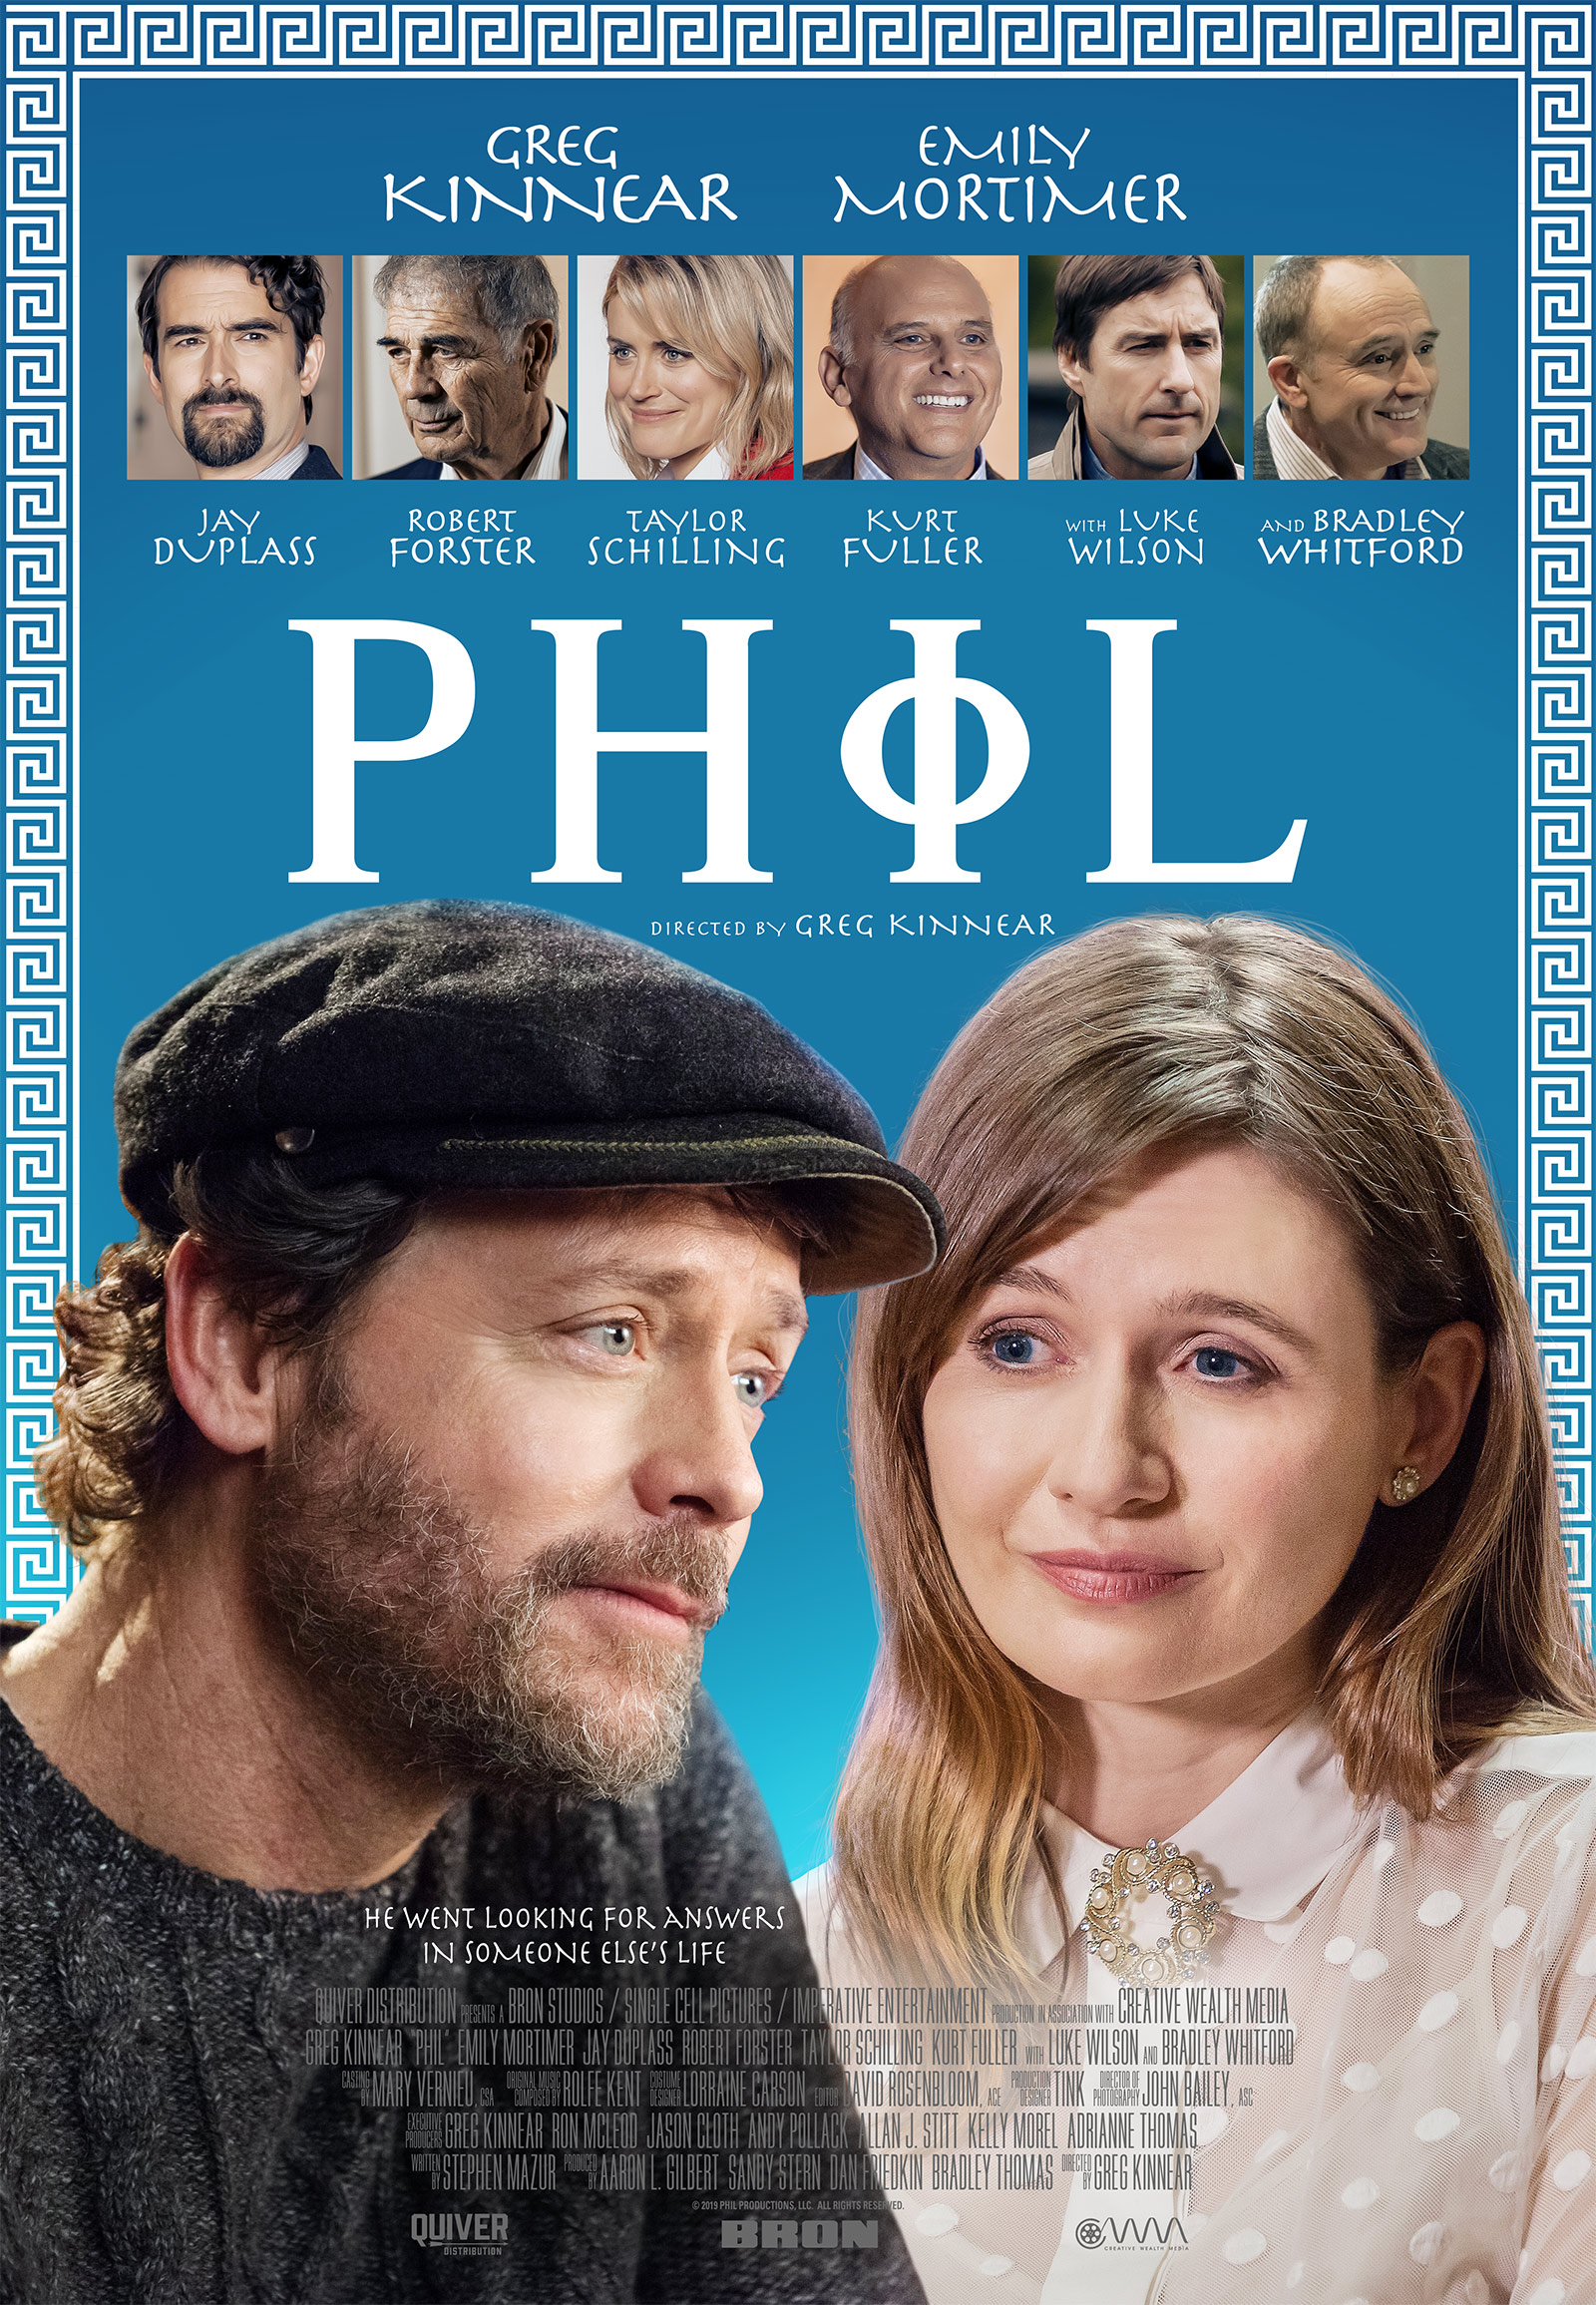 ดูหนังออนไลน์ฟรี The Philosophy of Phil (2019) แผนลับหมอฟันจิตป่วง